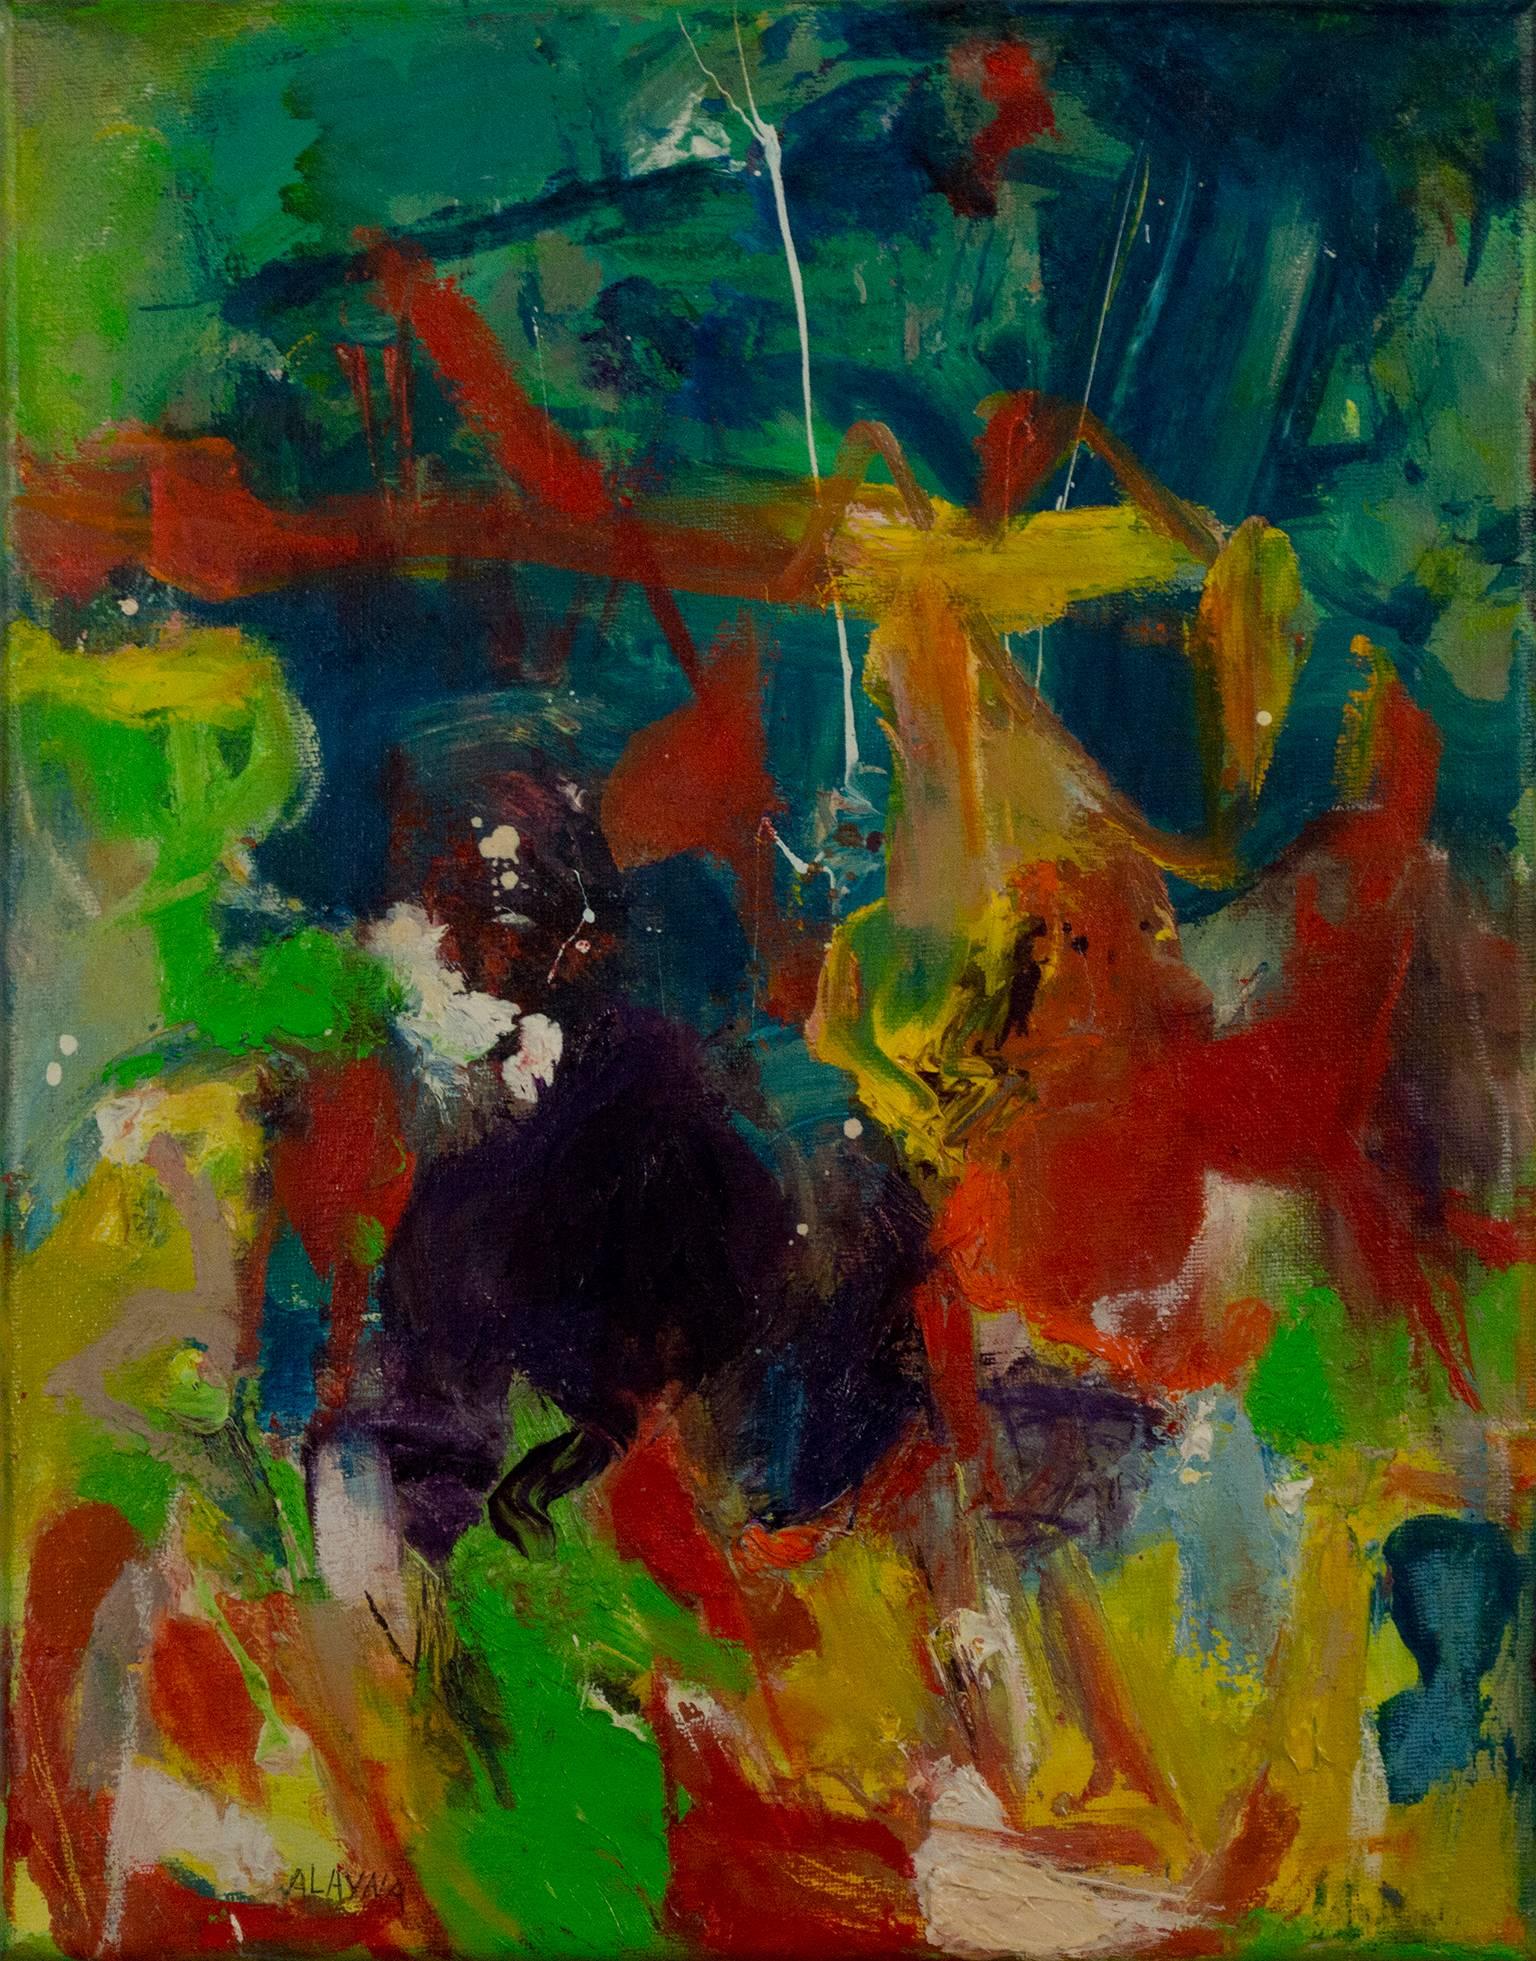 "Gypsy Wind I" est une peinture à l'huile originale sur toile d'Alayna Rose. L'artiste a signé le tableau en bas à gauche. Cette peinture présente une variété de marques abstraites en vert, jaune, violet, rouge et bleu. La galerie David Barnett met